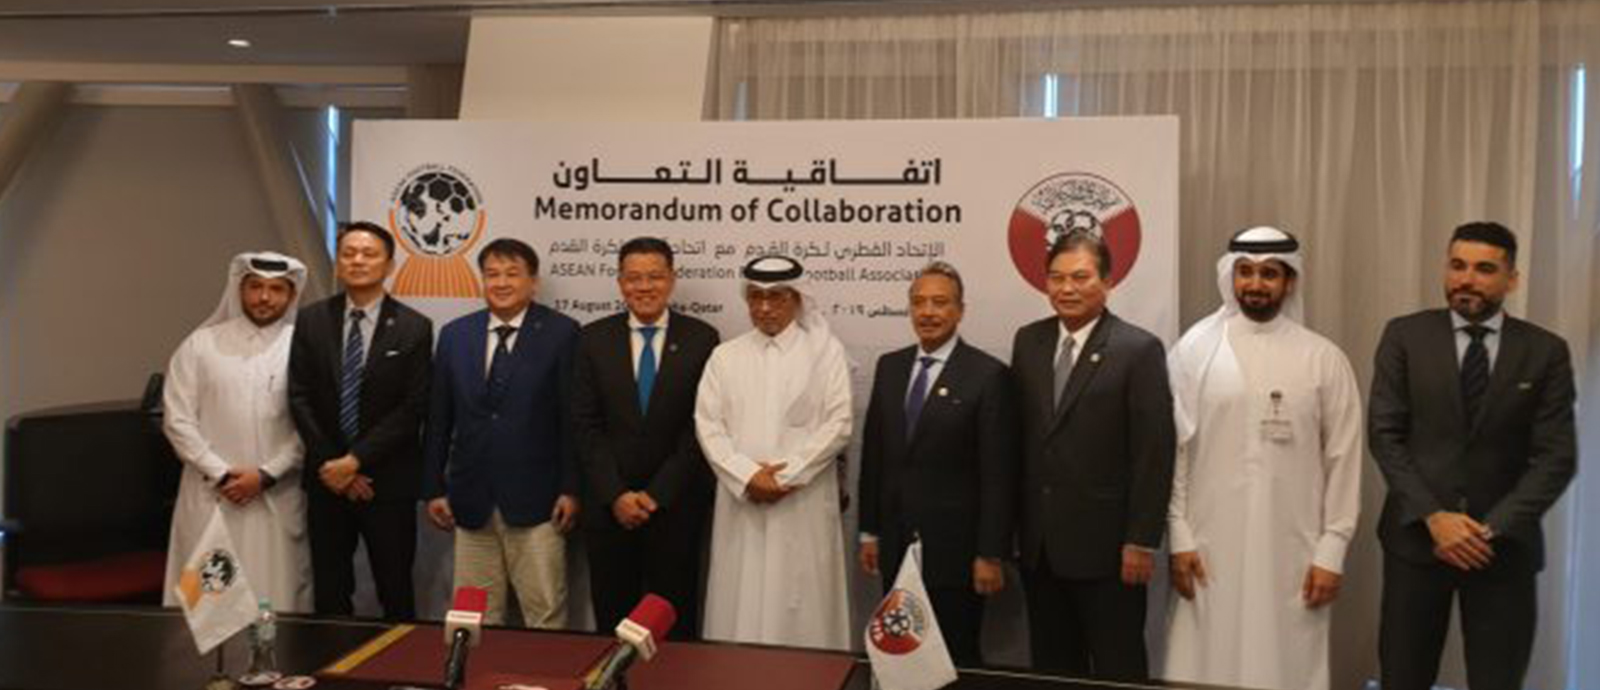 الاتحاد القطري لكرة القدم واتحاد آسيان يعقدان ندوتهما الإلكترونية الأولى